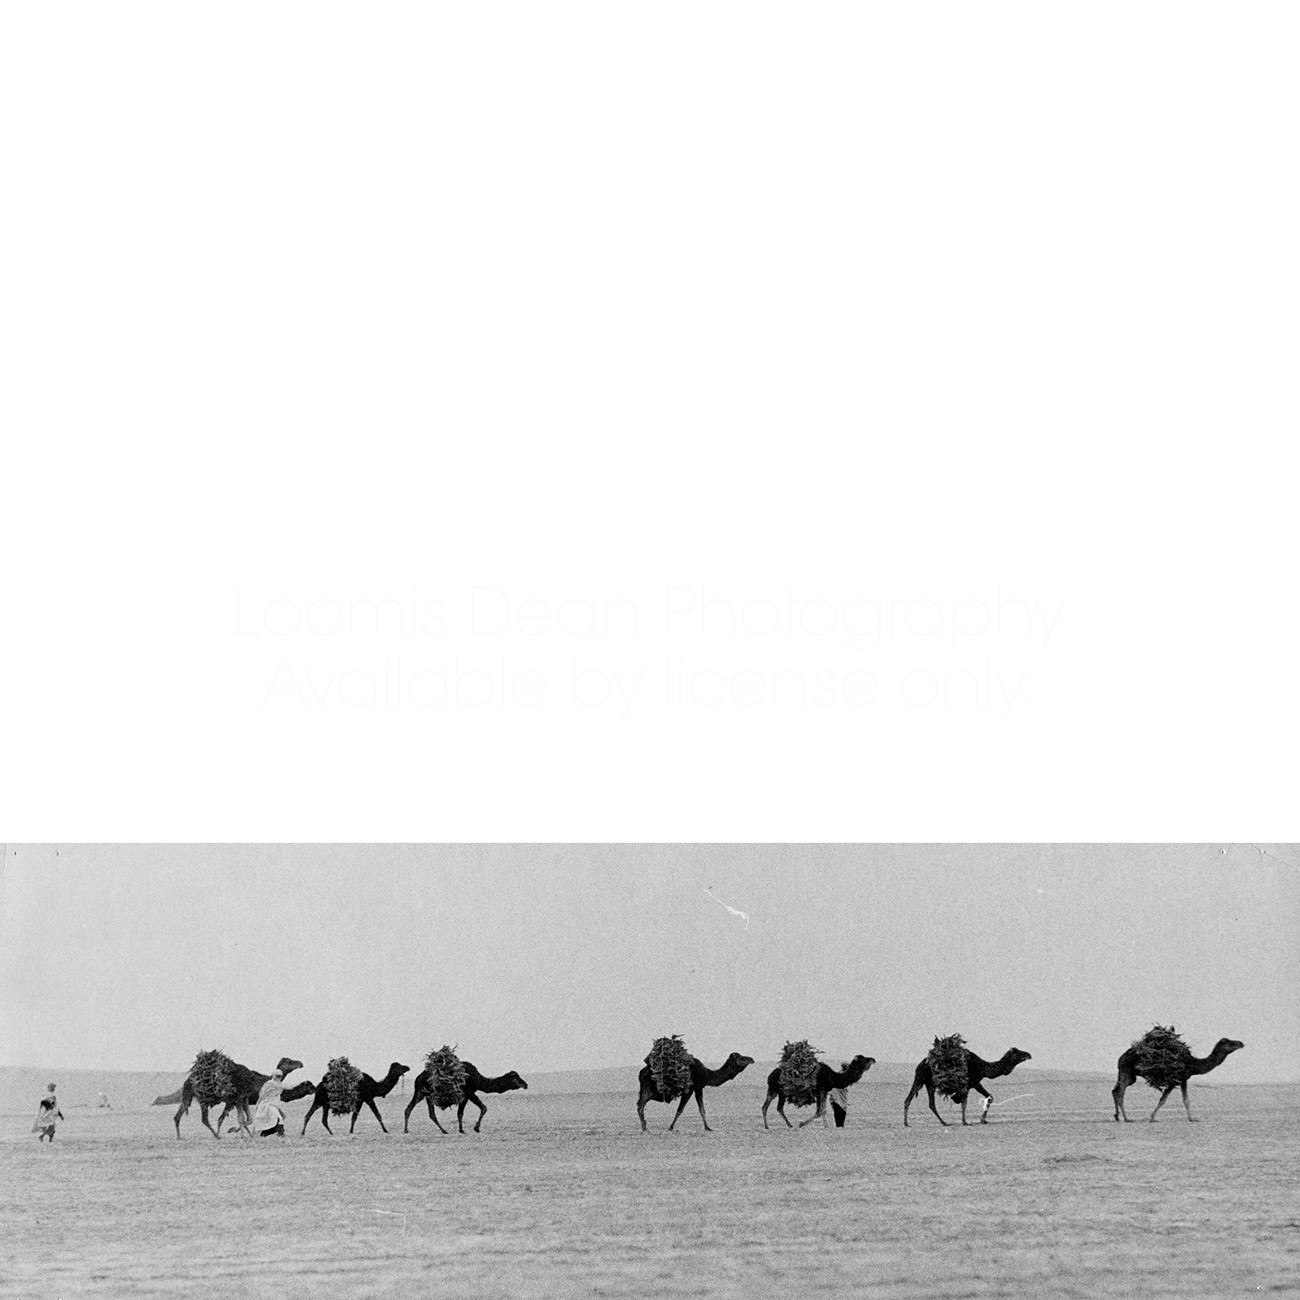 CAMELS IN SAHARA DESERT S 461 